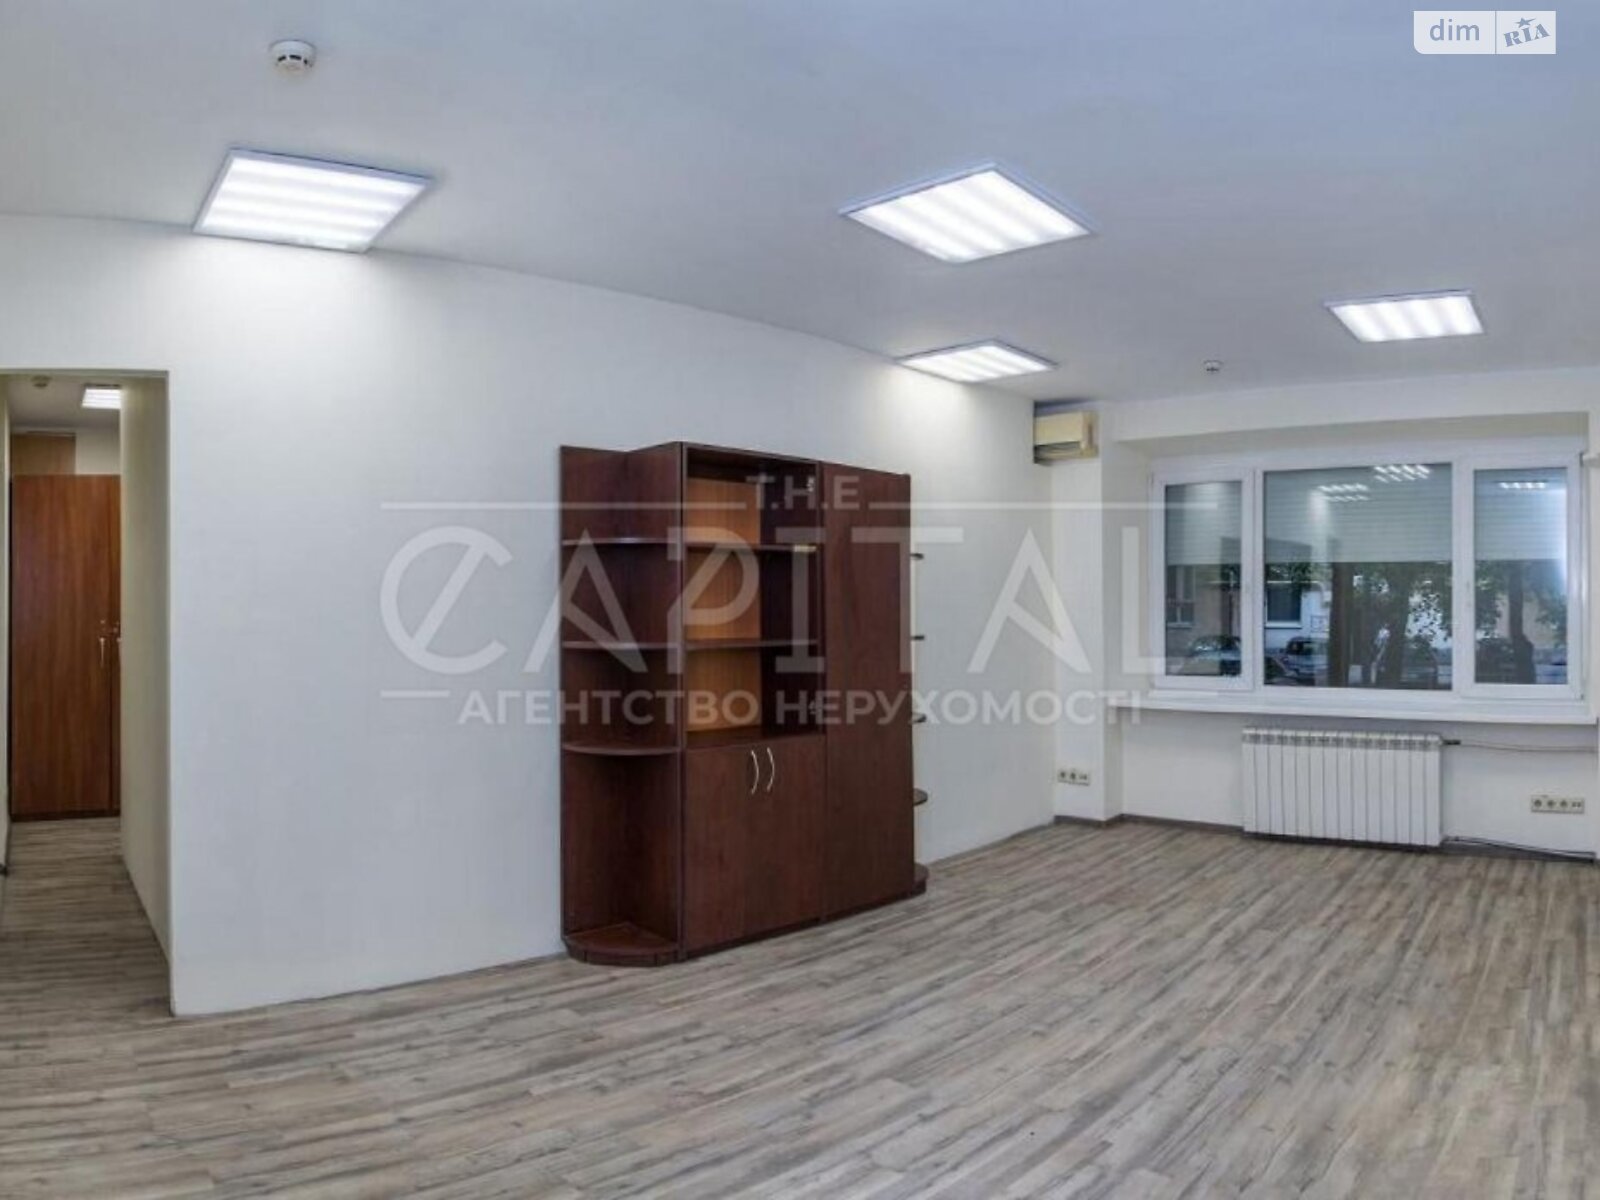 Аренда офисного помещения в Киеве, Лобановского проспект 5, помещений - 6, этаж - 1 фото 1